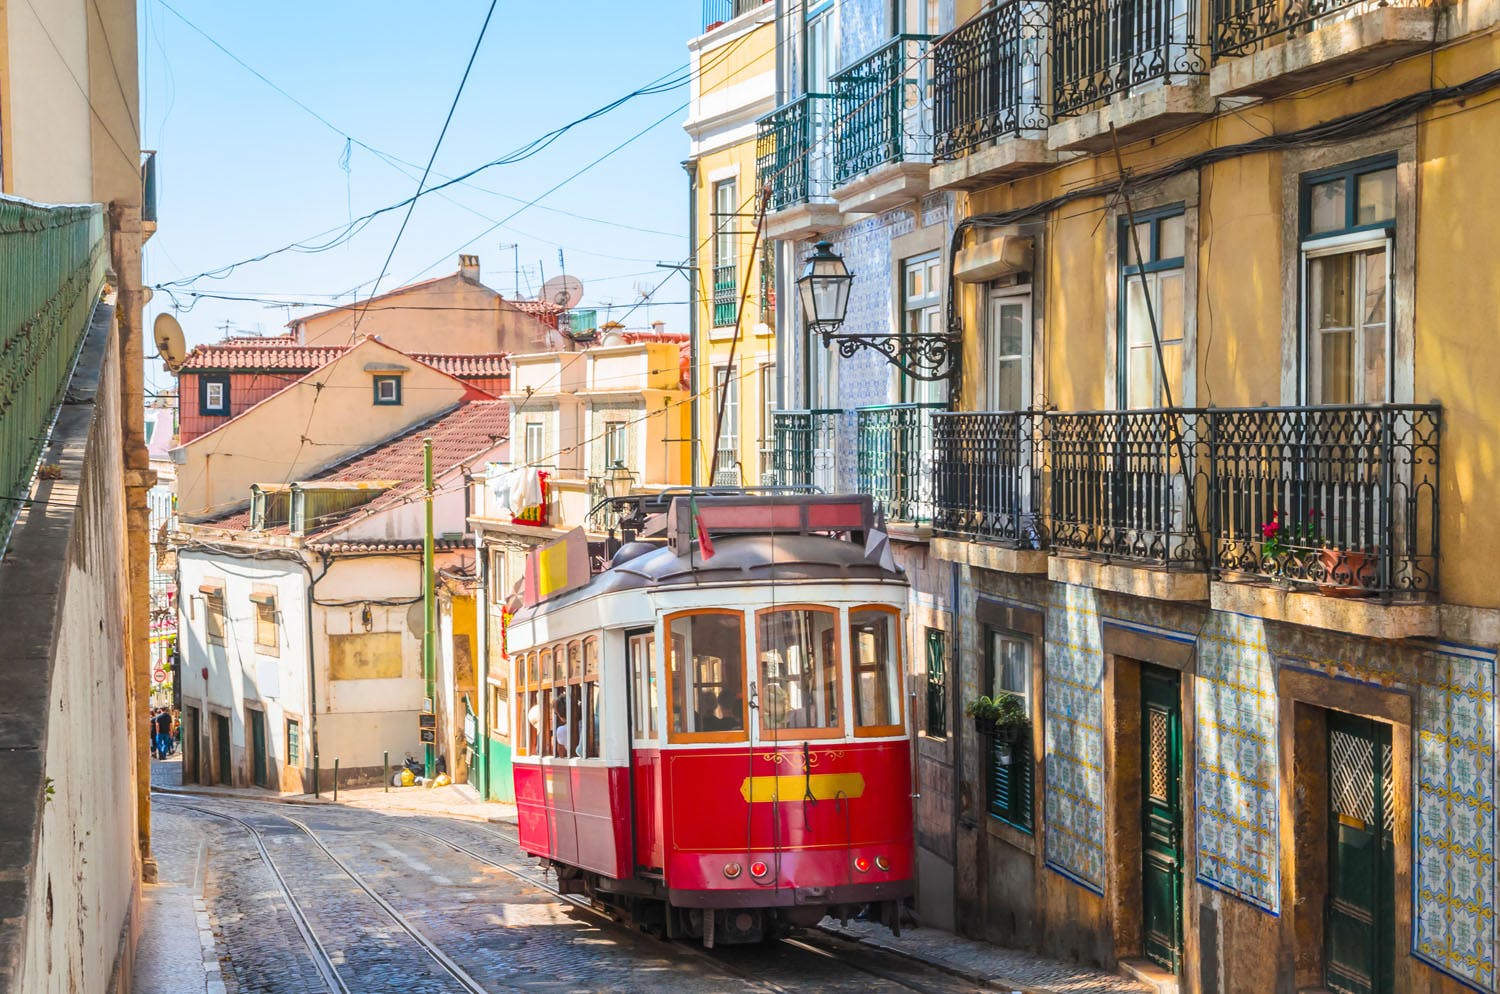 Lisbon - Vintage tram in Alfama